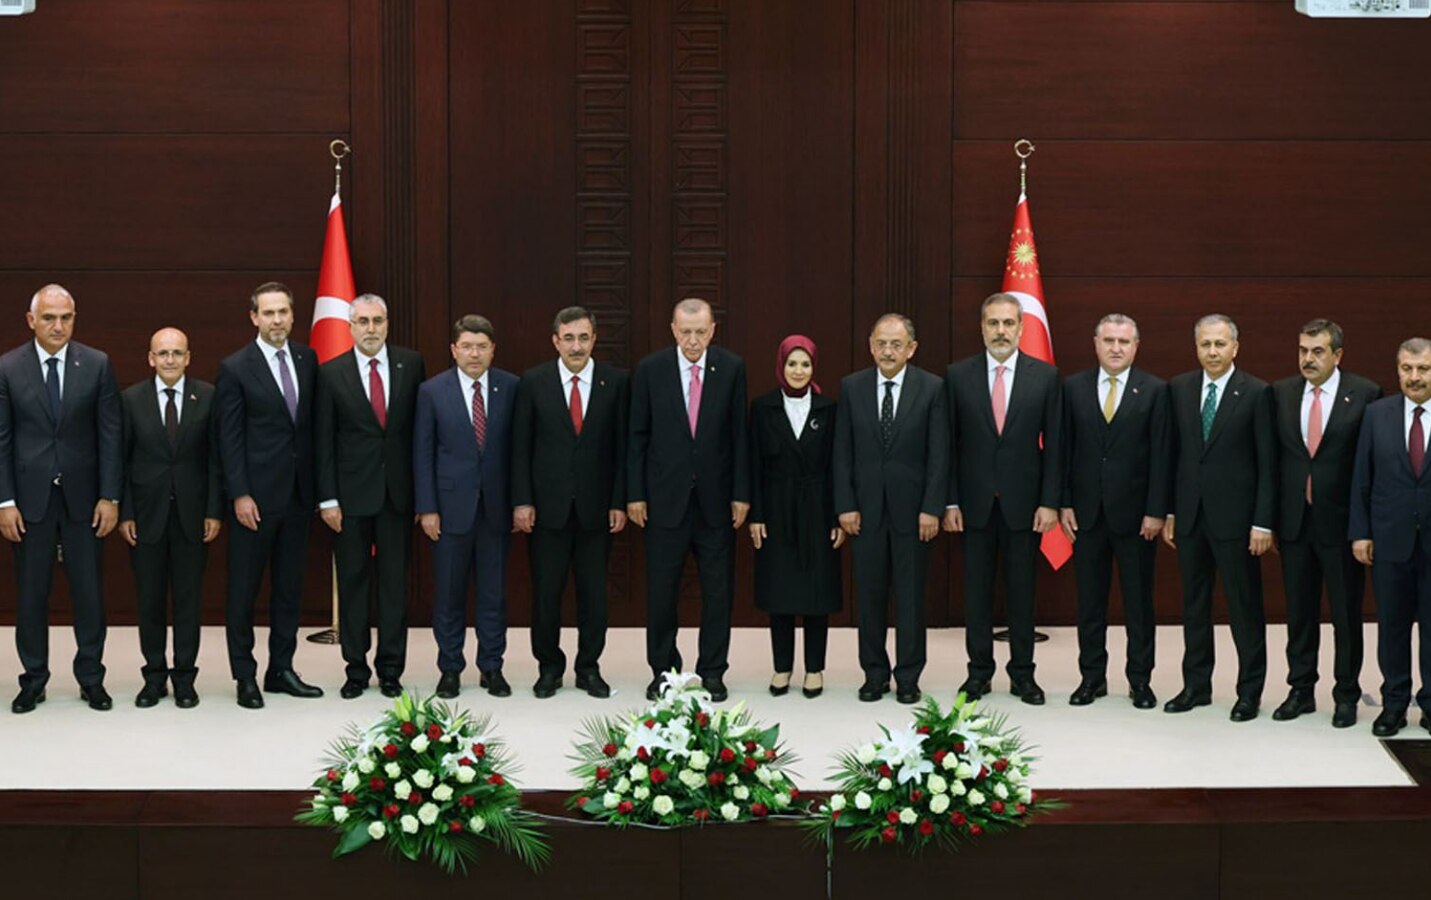 Thế giới - Gương mặt “mới mà quen” trong Nội các Tổng thống Thổ Nhĩ Kỳ Erdogan